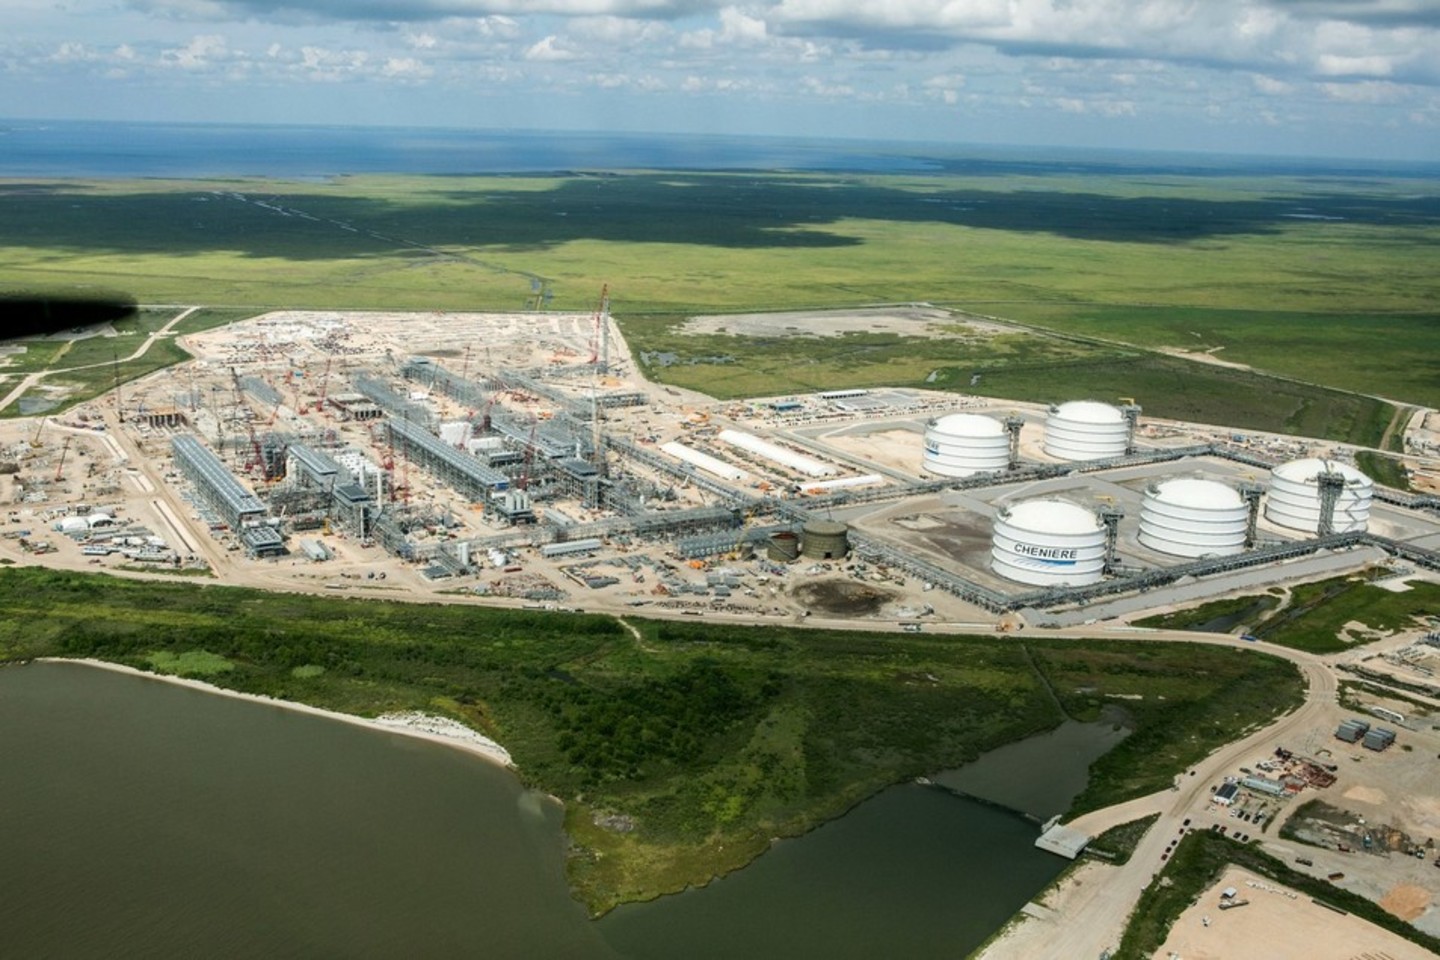 „Chinerie“ pastatė pirmąjį suskystintų gamtinių dujų eksporto terminalą, iš kurio pirmas krovinys pajudės kitų metų pradžioje. Lietuva siekia būti jo pirkėja.